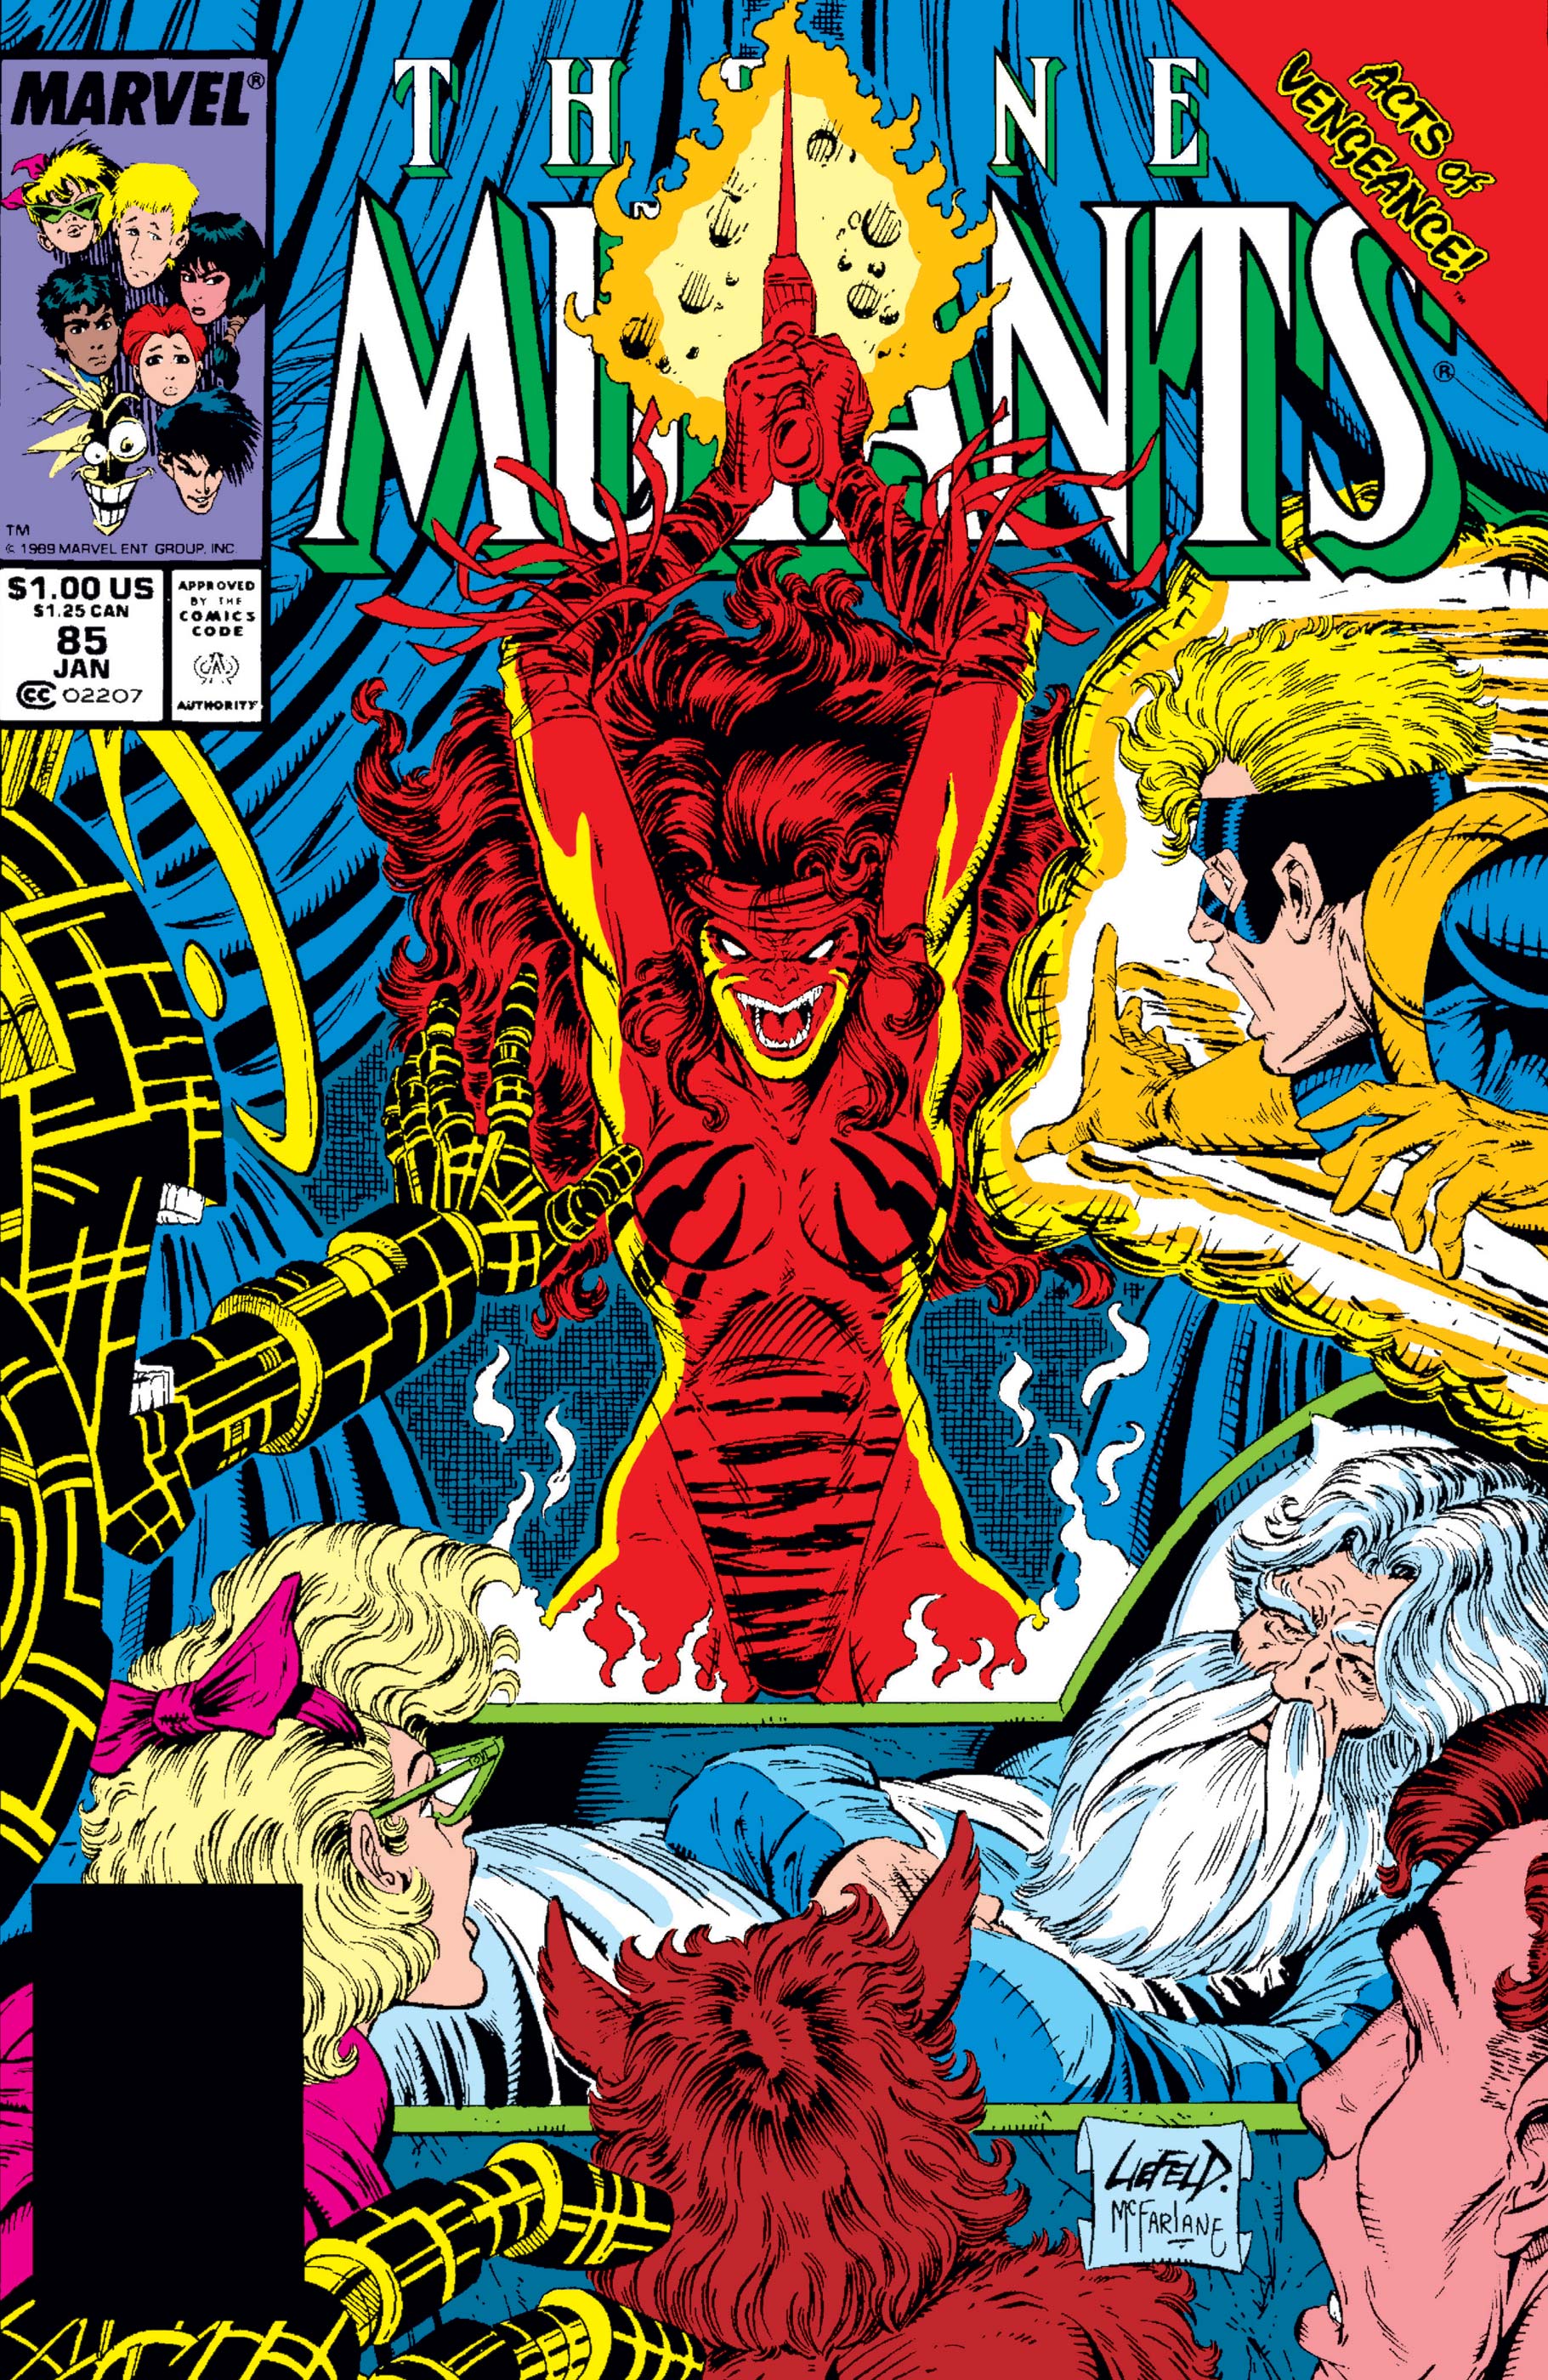 New mutants 85